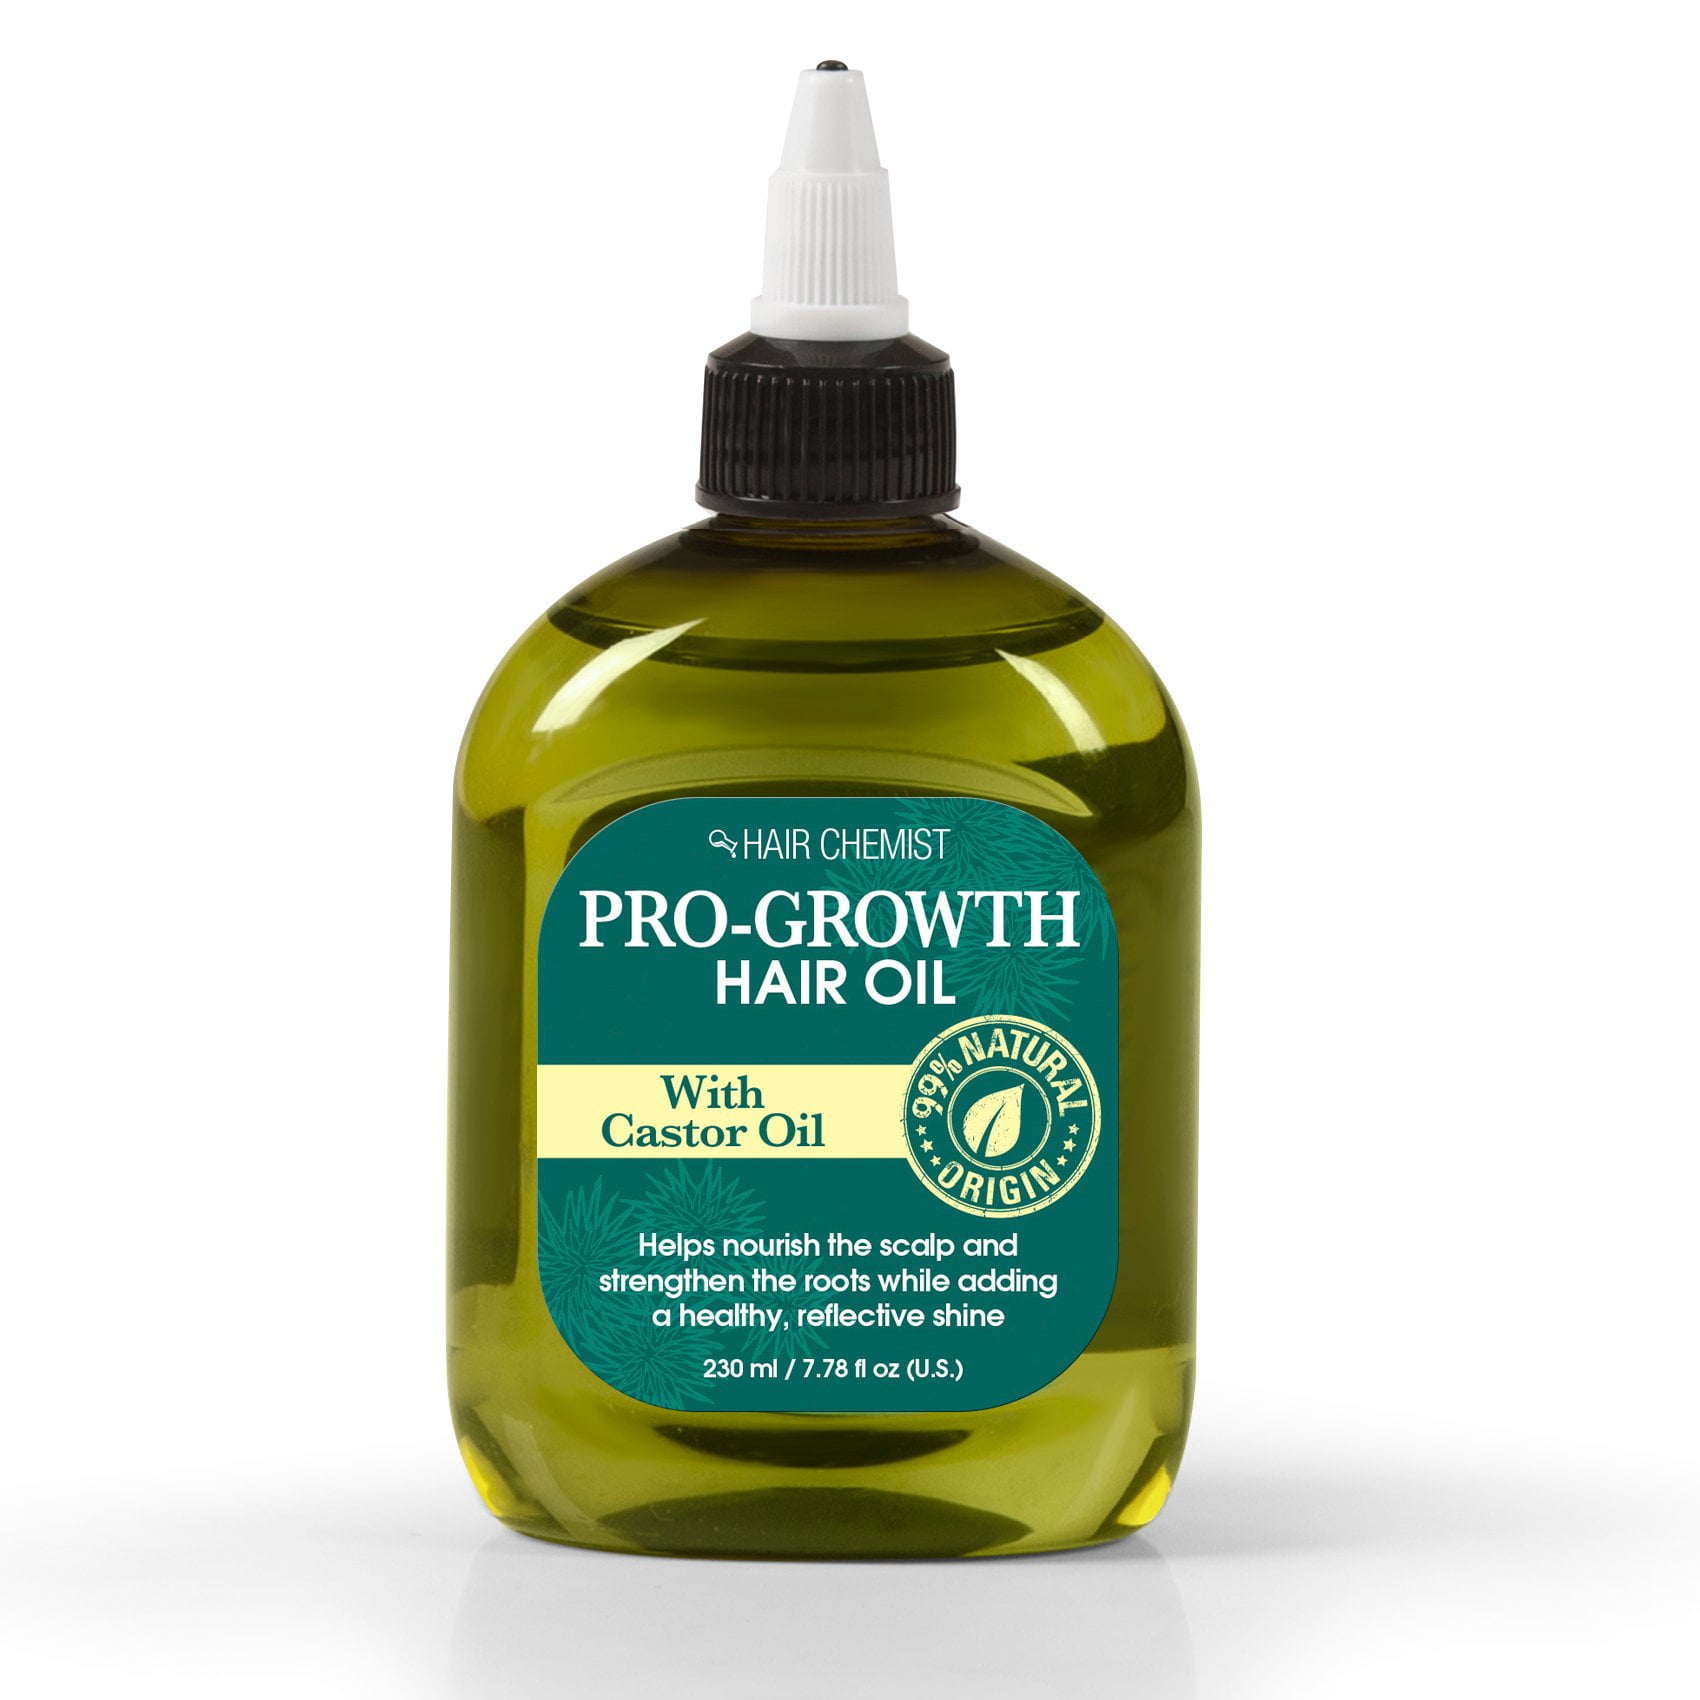 Hair Chemist Pro-growth Hair Oil with Castor Oil 7.78 oz. - Walmart.com